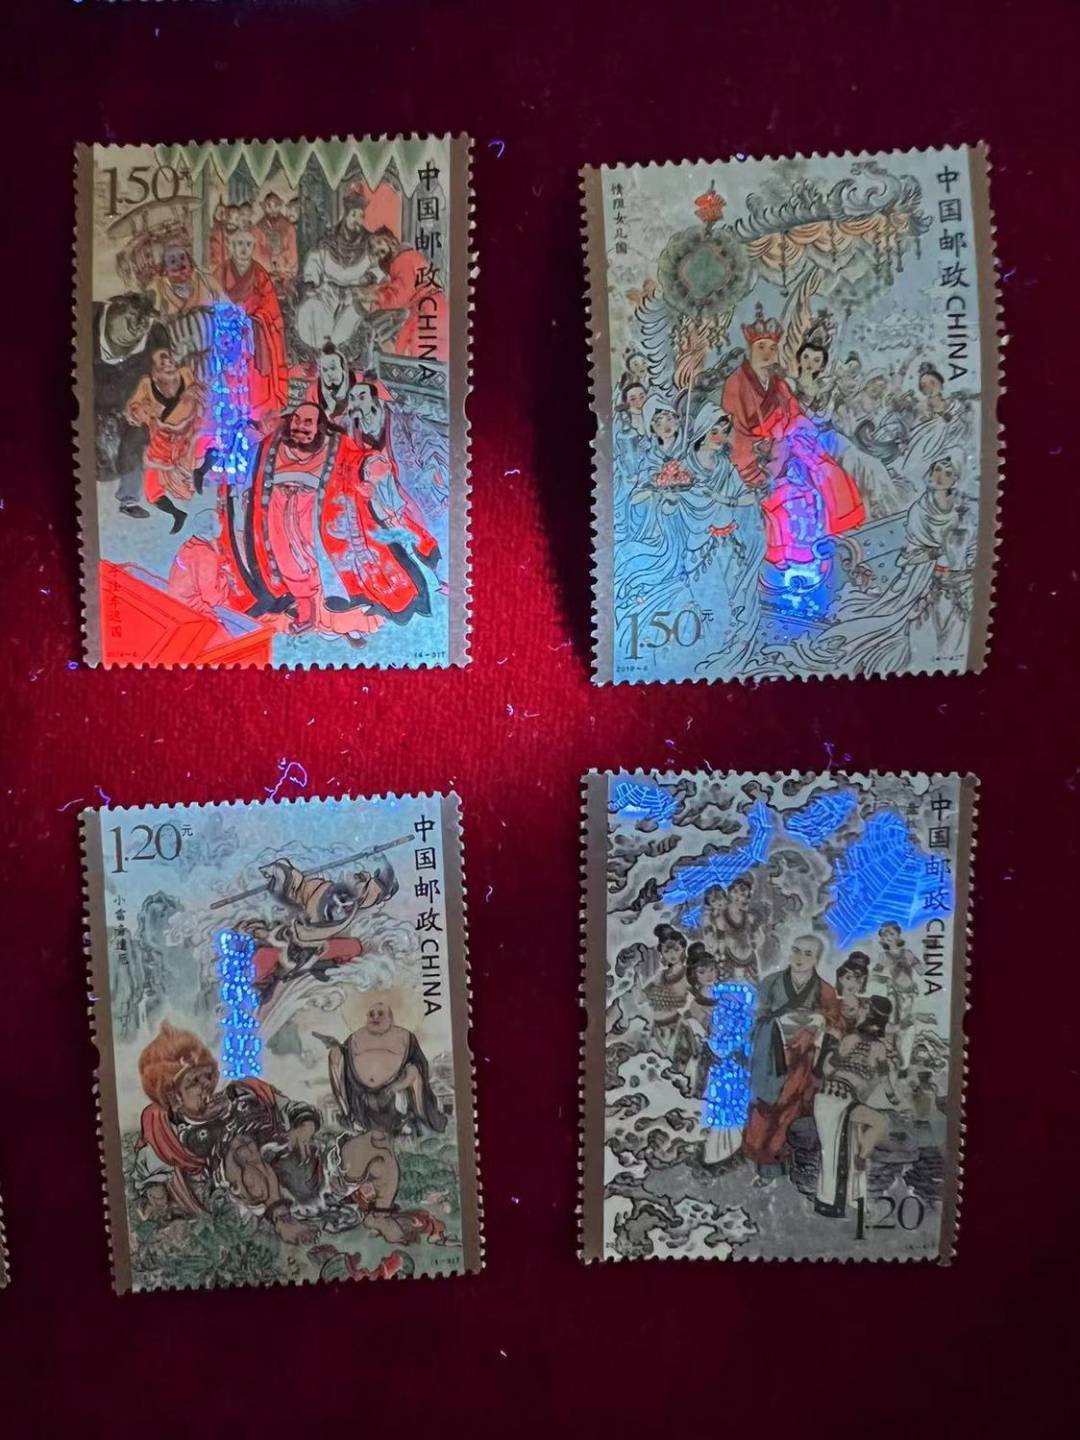 【邮票】西游记主题邮票组合中国邮政发行带荧光反应